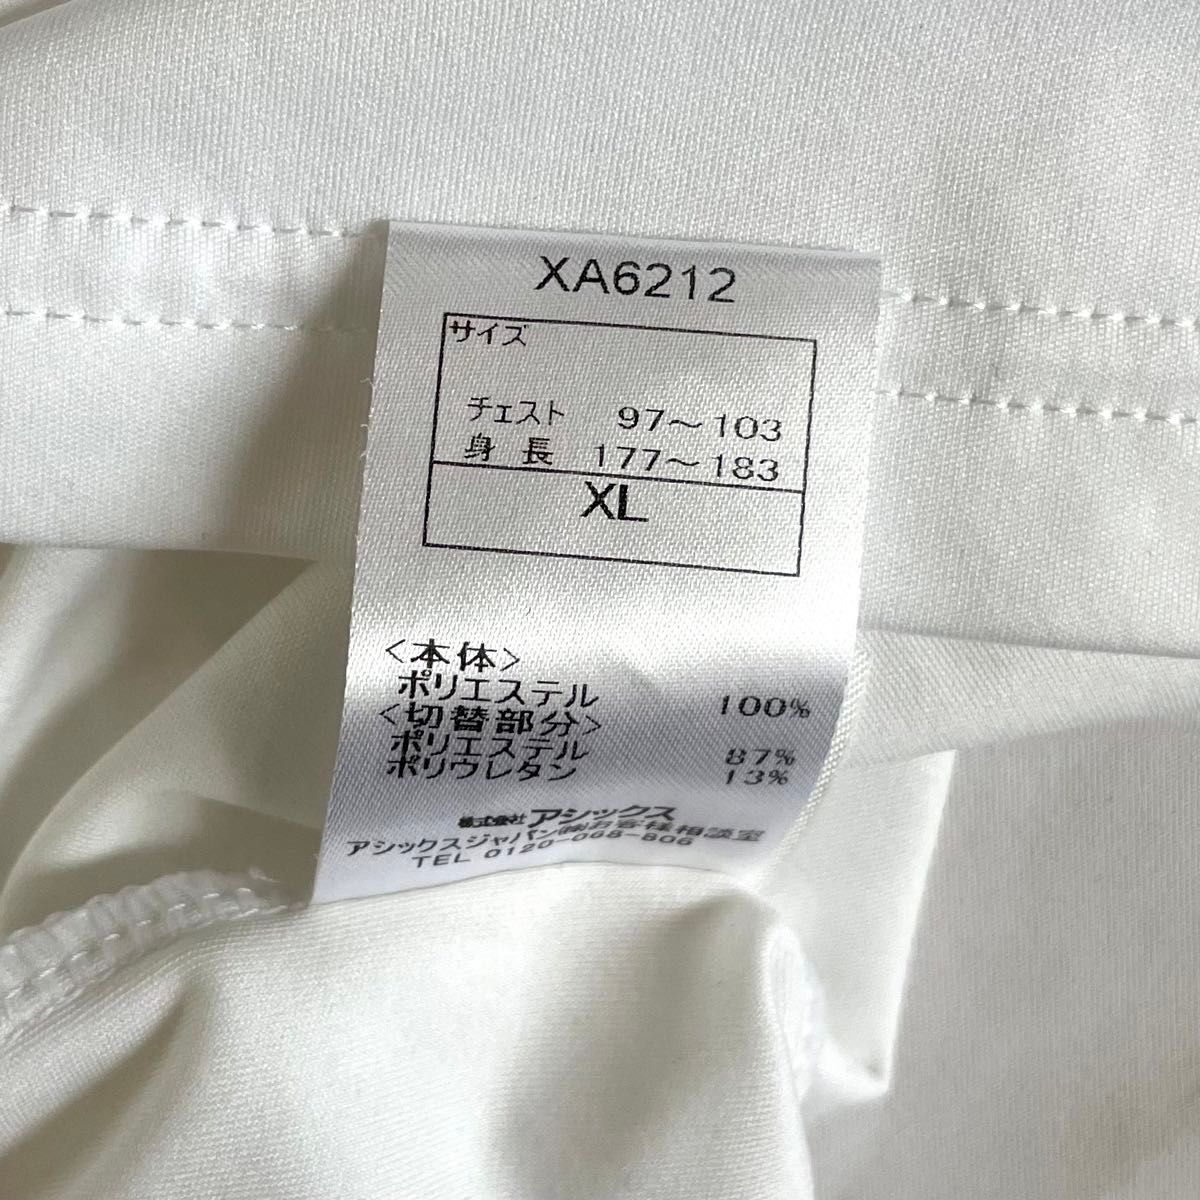 asics アシックス A77 半袖 Tシャツ メンズ XLサイズ トレーニングウェア